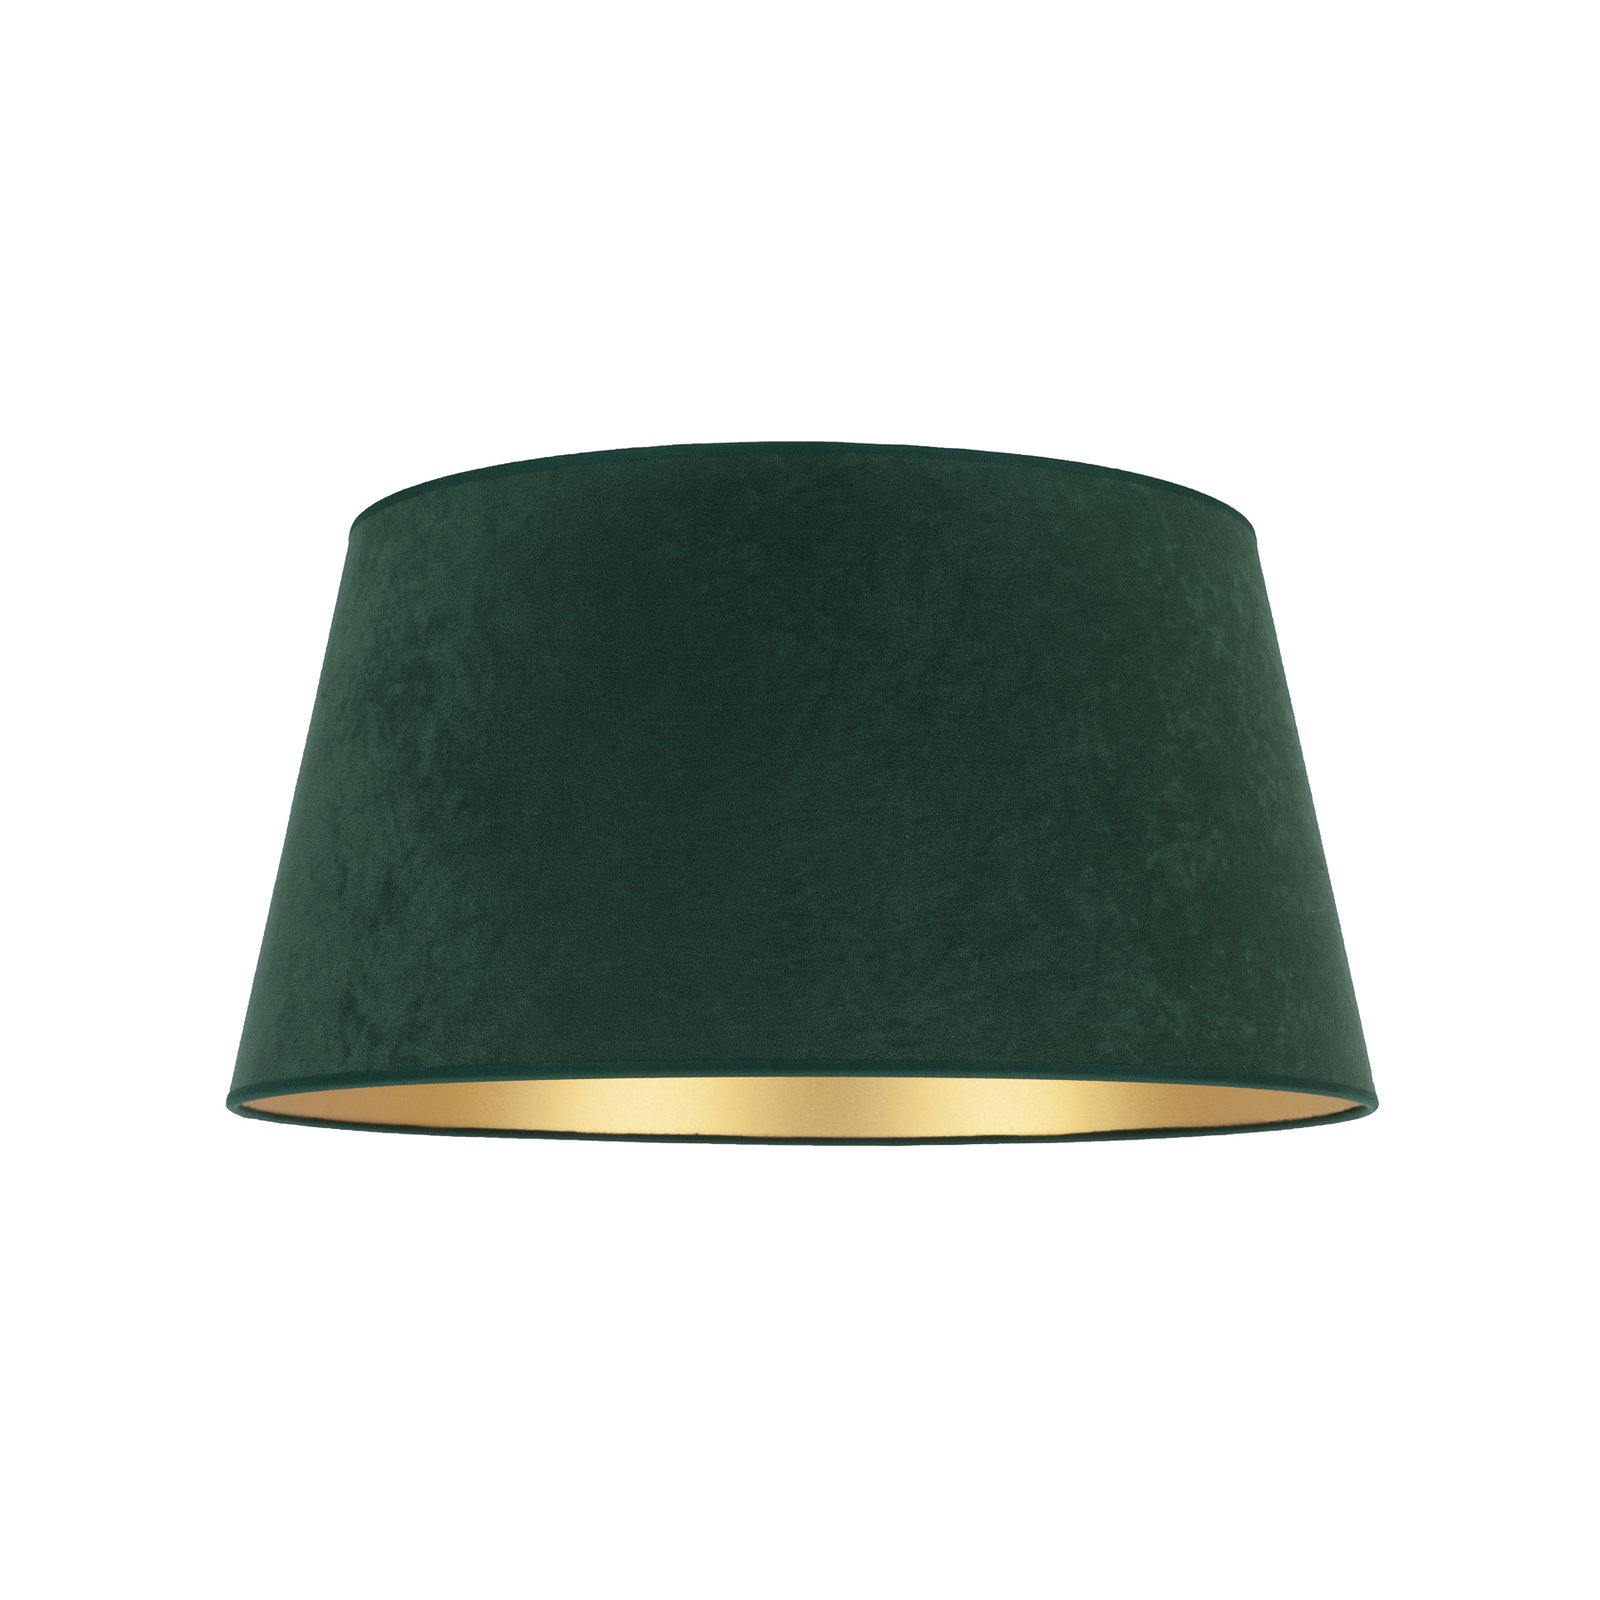 Cone lampeskærm, højde 22,5 cm, mørkegrøn/guld